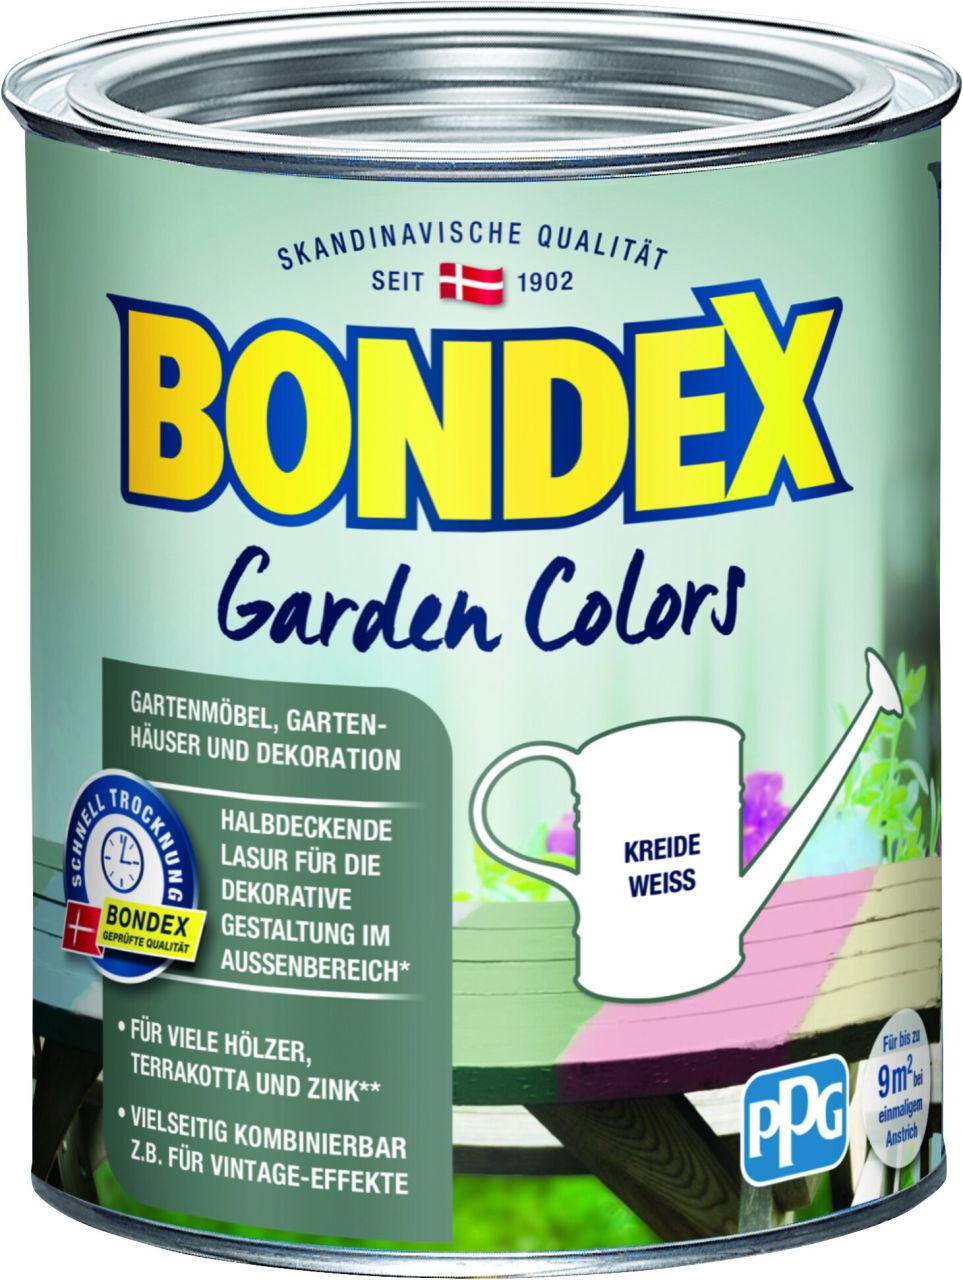 Bondex Garden Colors 750 ml kreide weiß von Bondex